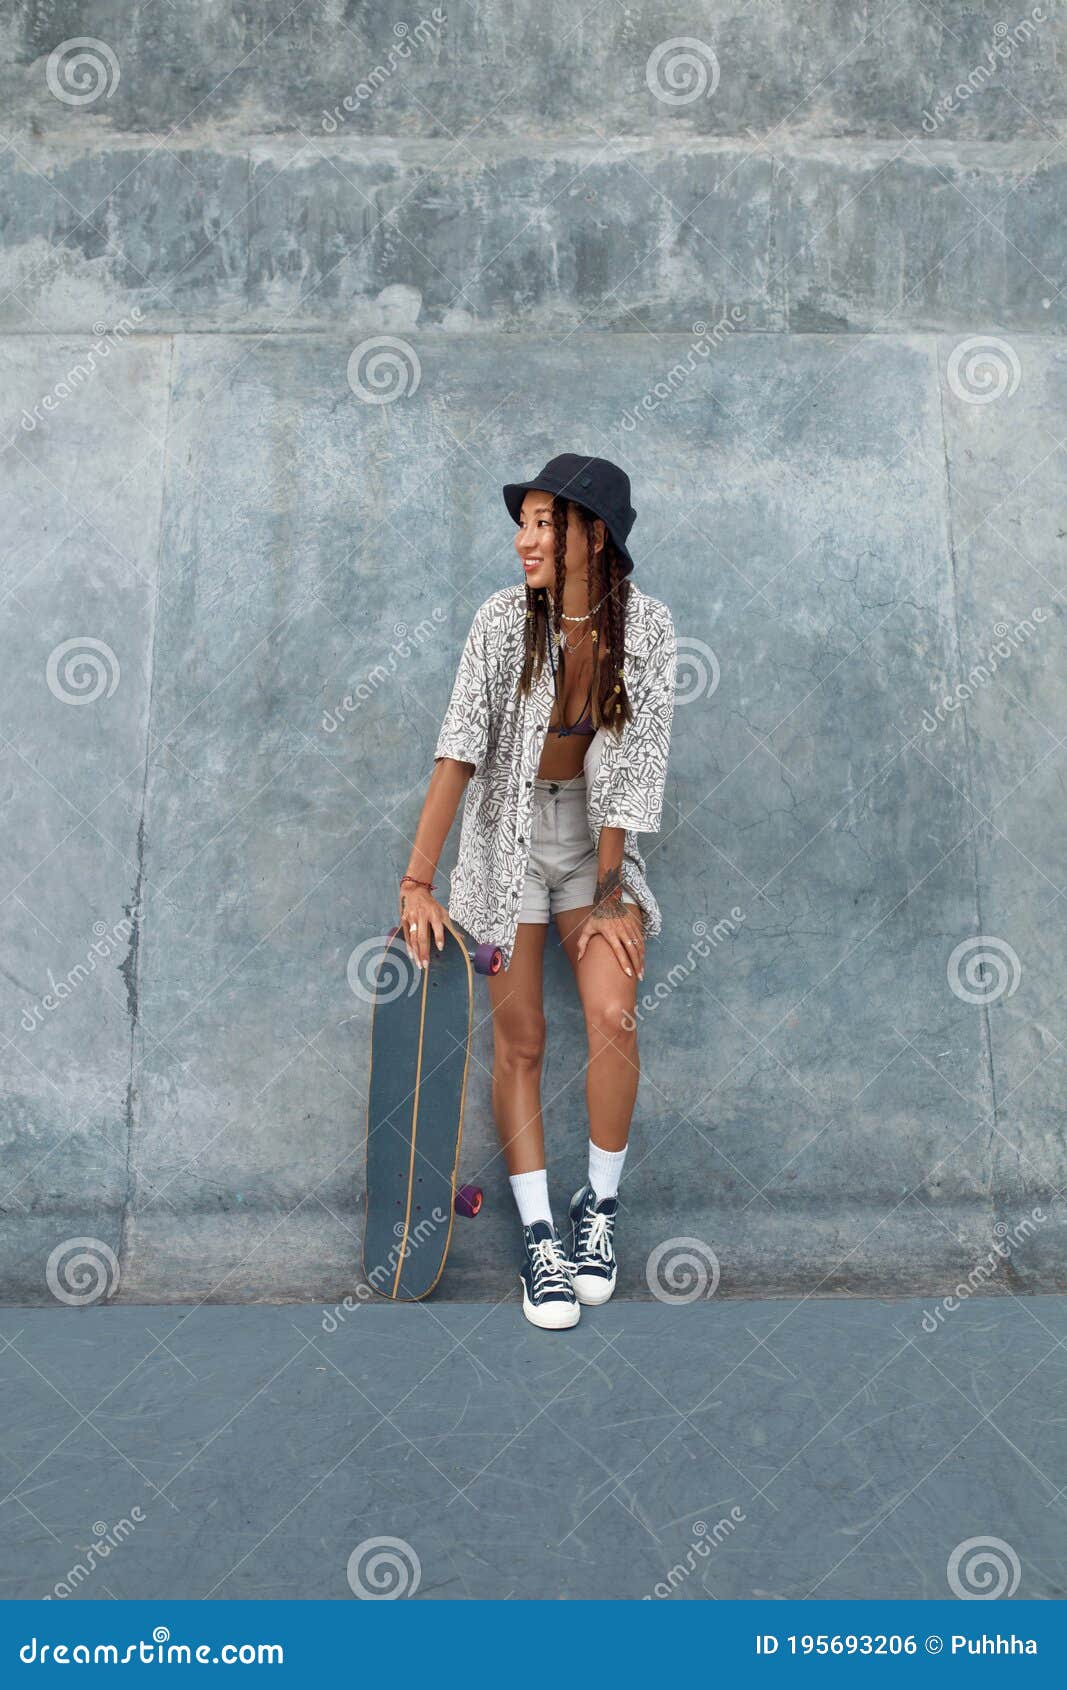 https://thumbs.dreamstime.com/z/skater-girl-skatepark-full-length-portrait-female-hipster-casual-outfit-skateboard-teenager-looking-away-against-195693206.jpg